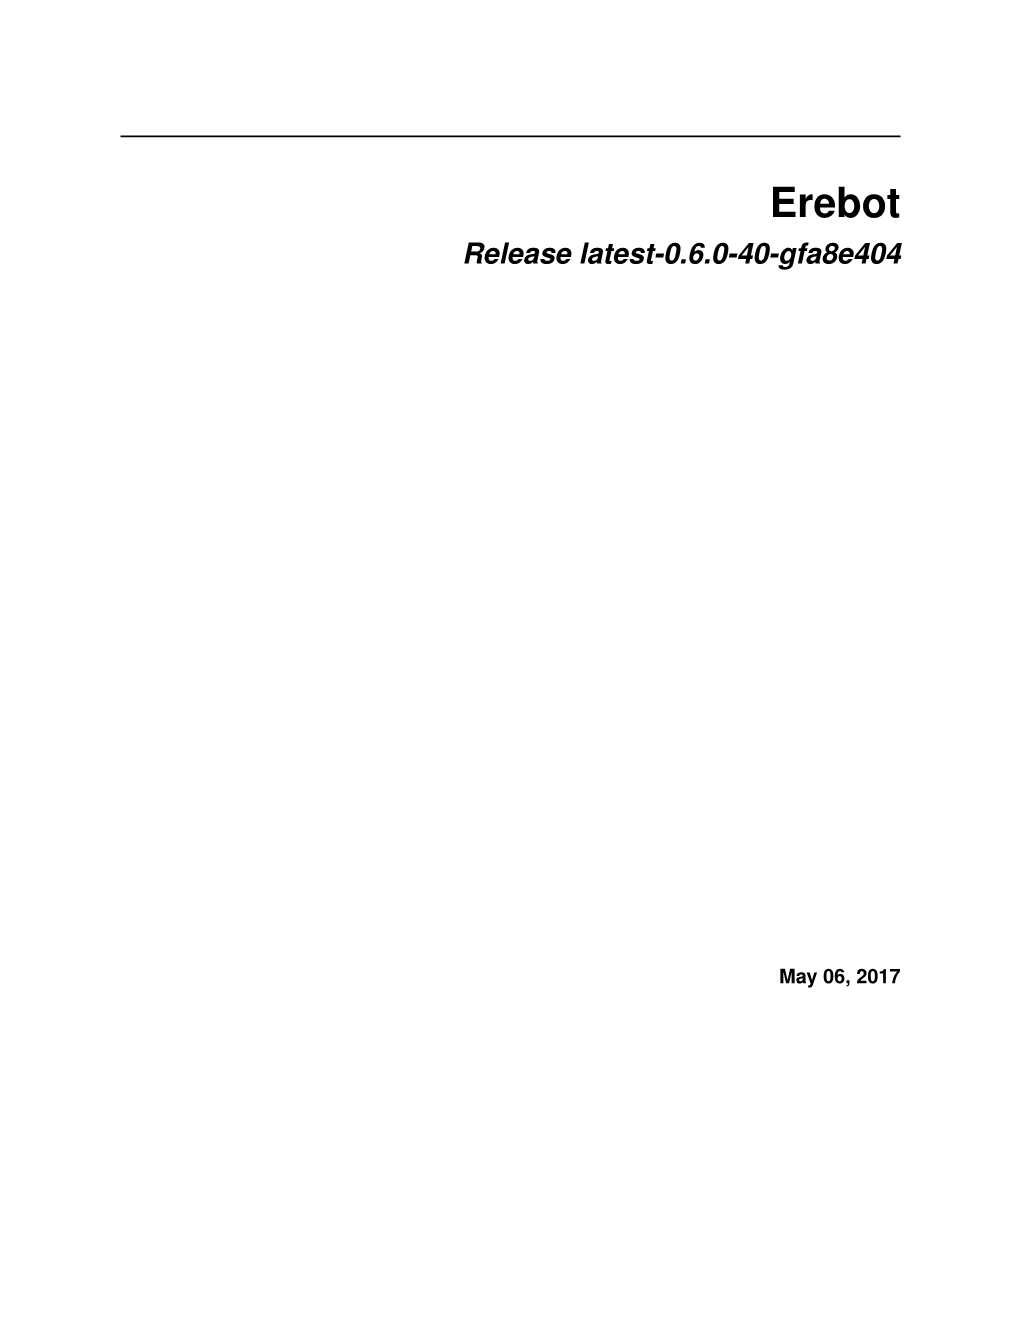 Erebot Release Latest-0.6.0-40-Gfa8e404